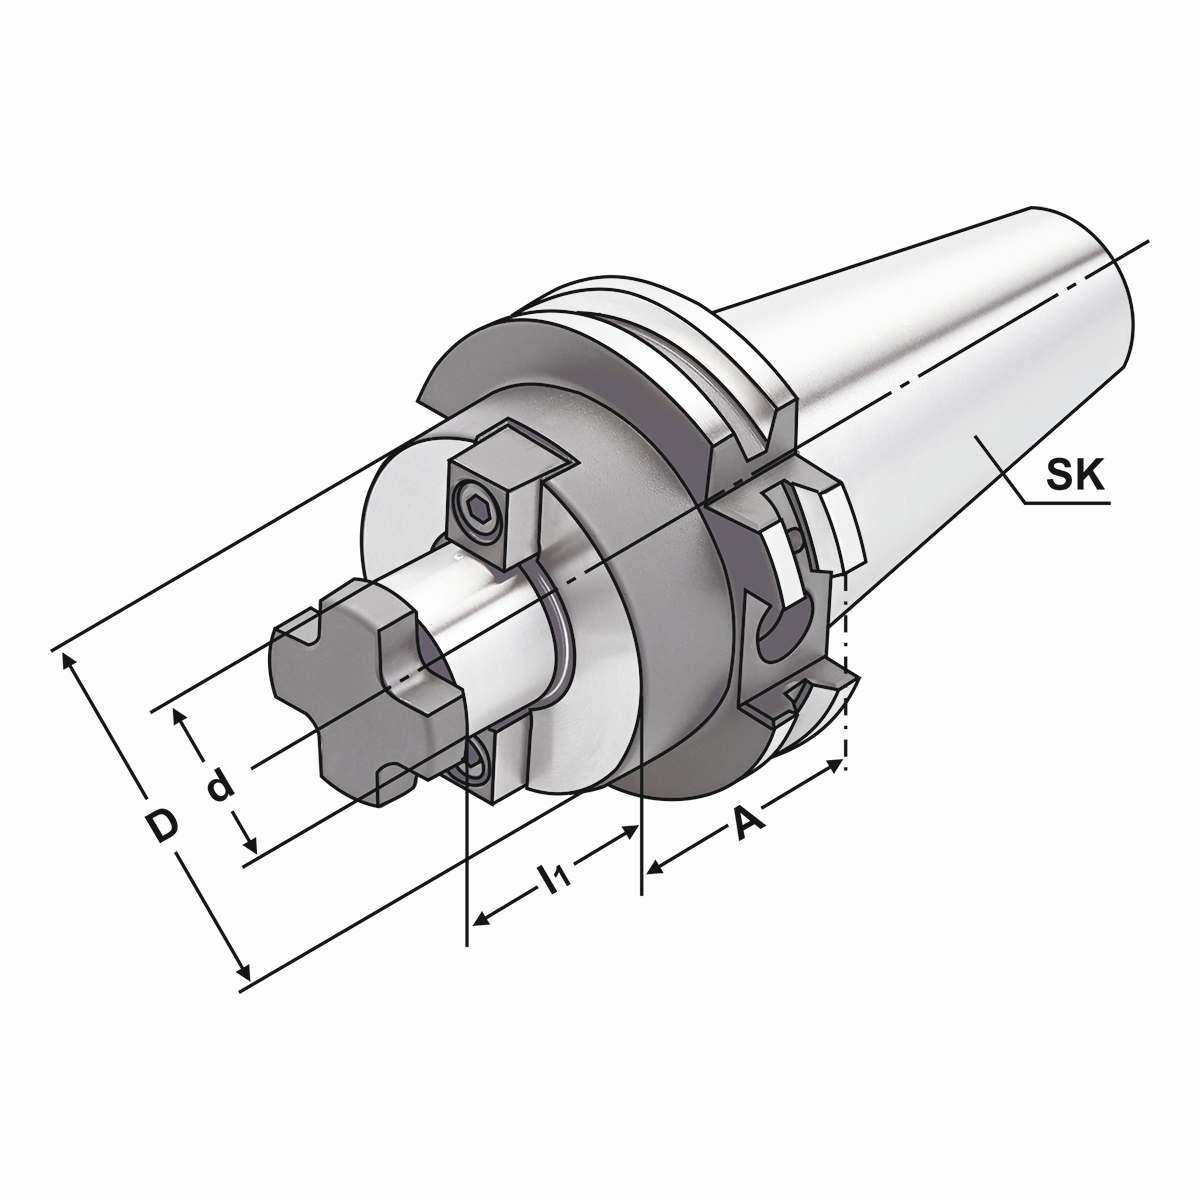 Quernut-Aufsteckdorn SK 30-16-40 mit vergrößertem Bunddurchmesser